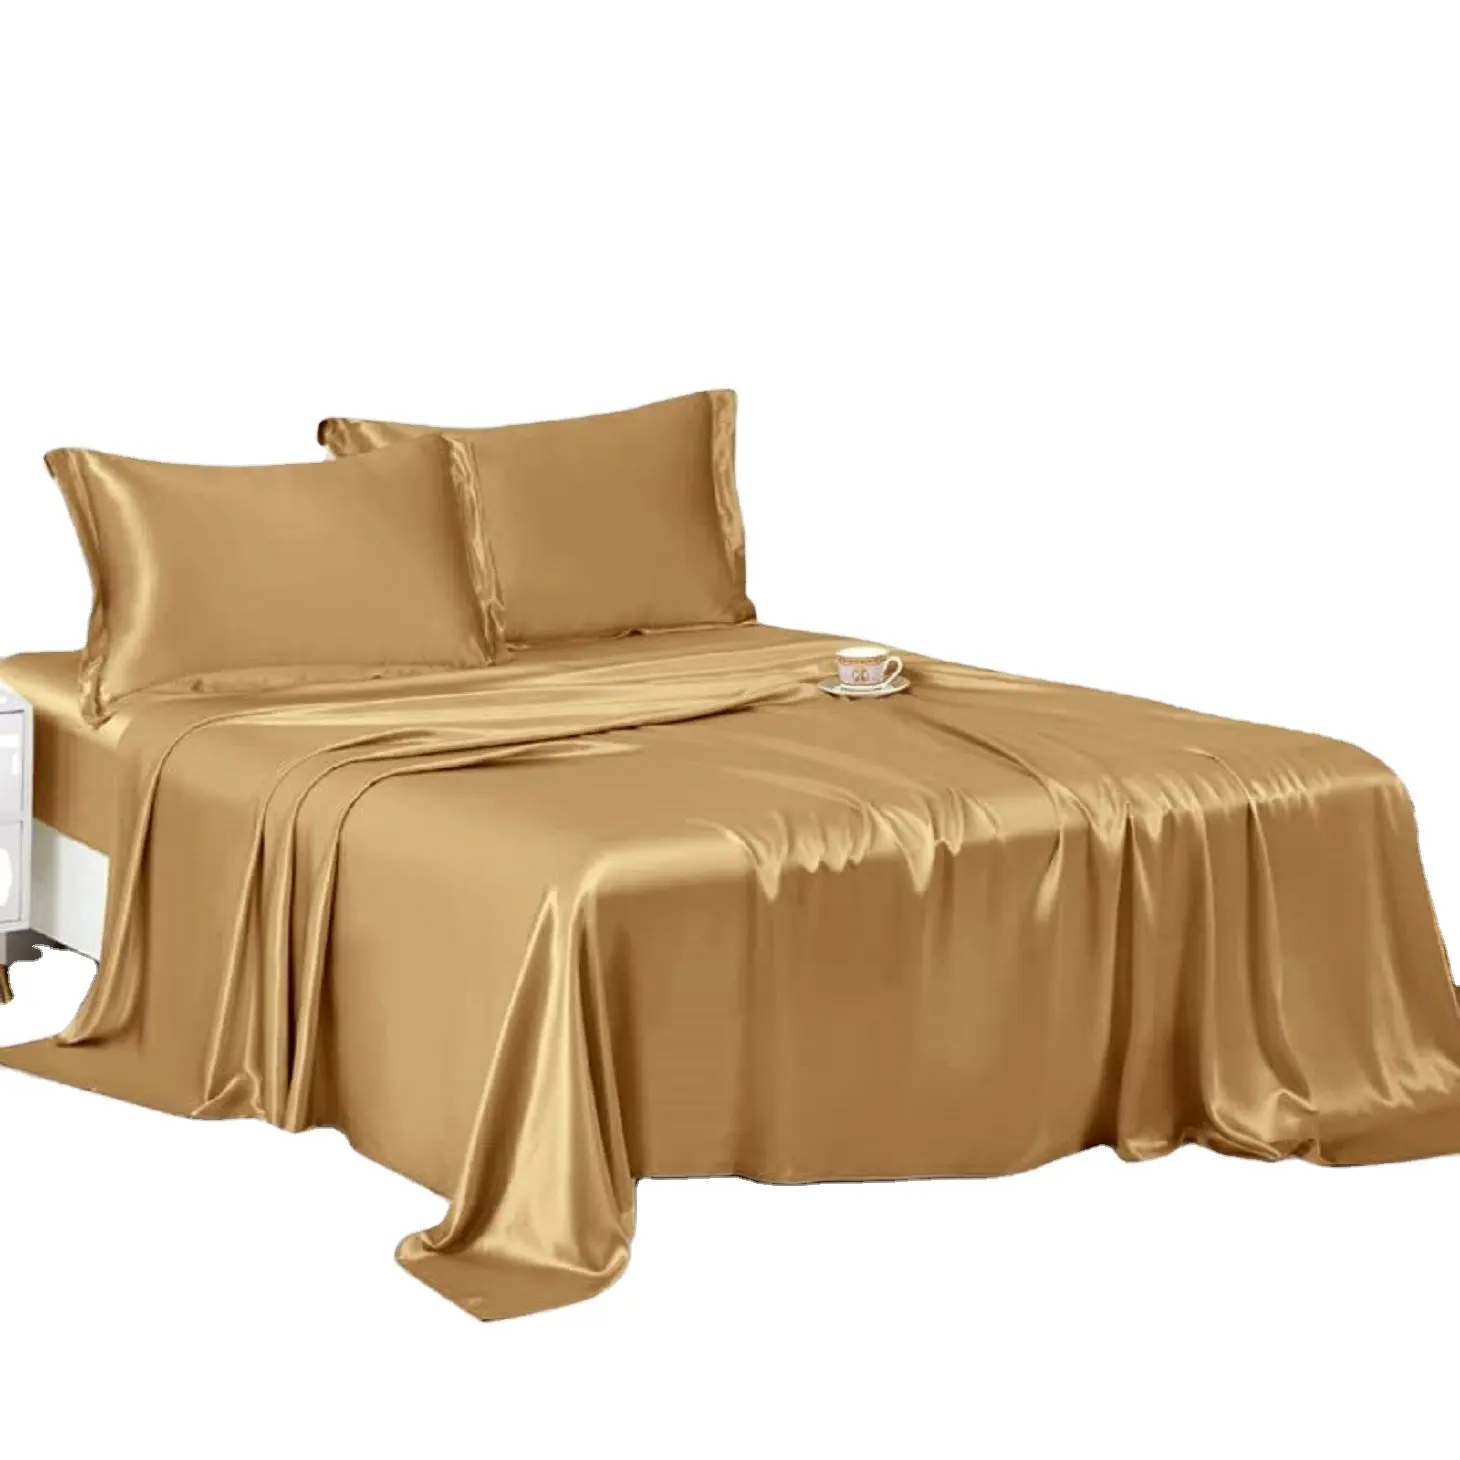 Lüks altın dut yatak örtüsü yatak çarşafı yorgan yatak örtüsü seti derin boyutu ile